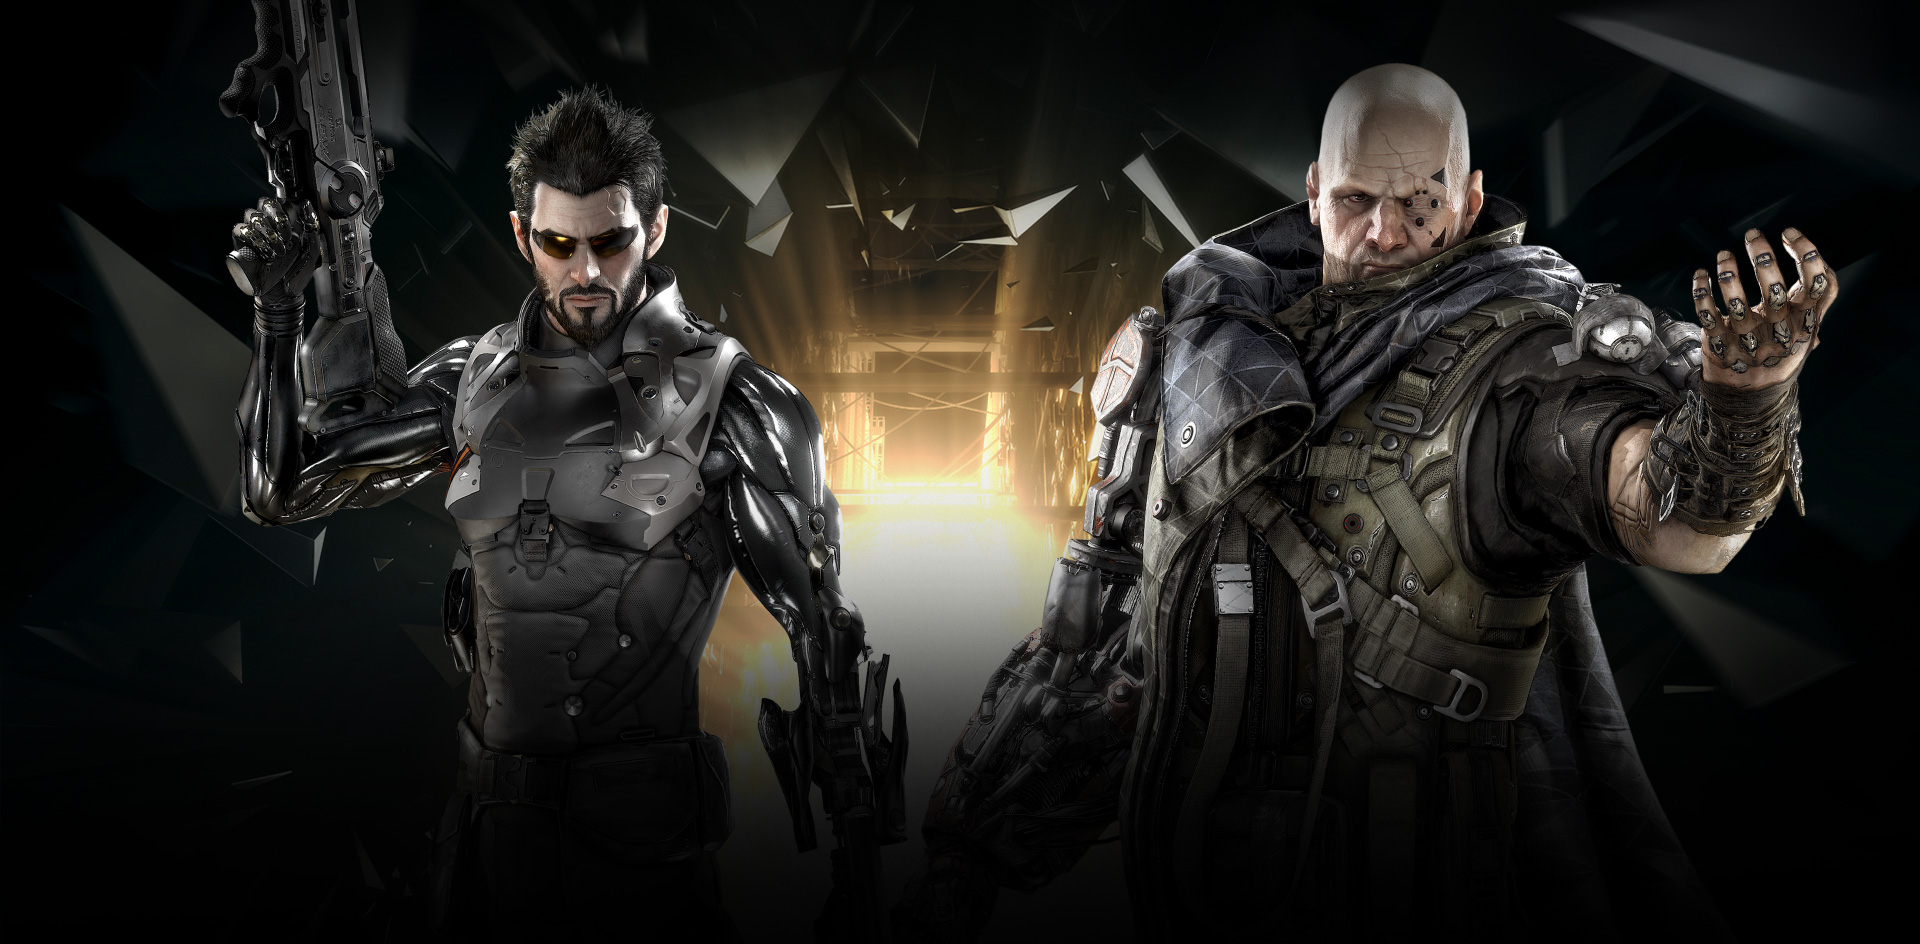 Deus Ex Backgrounds on Wallpapers Vista